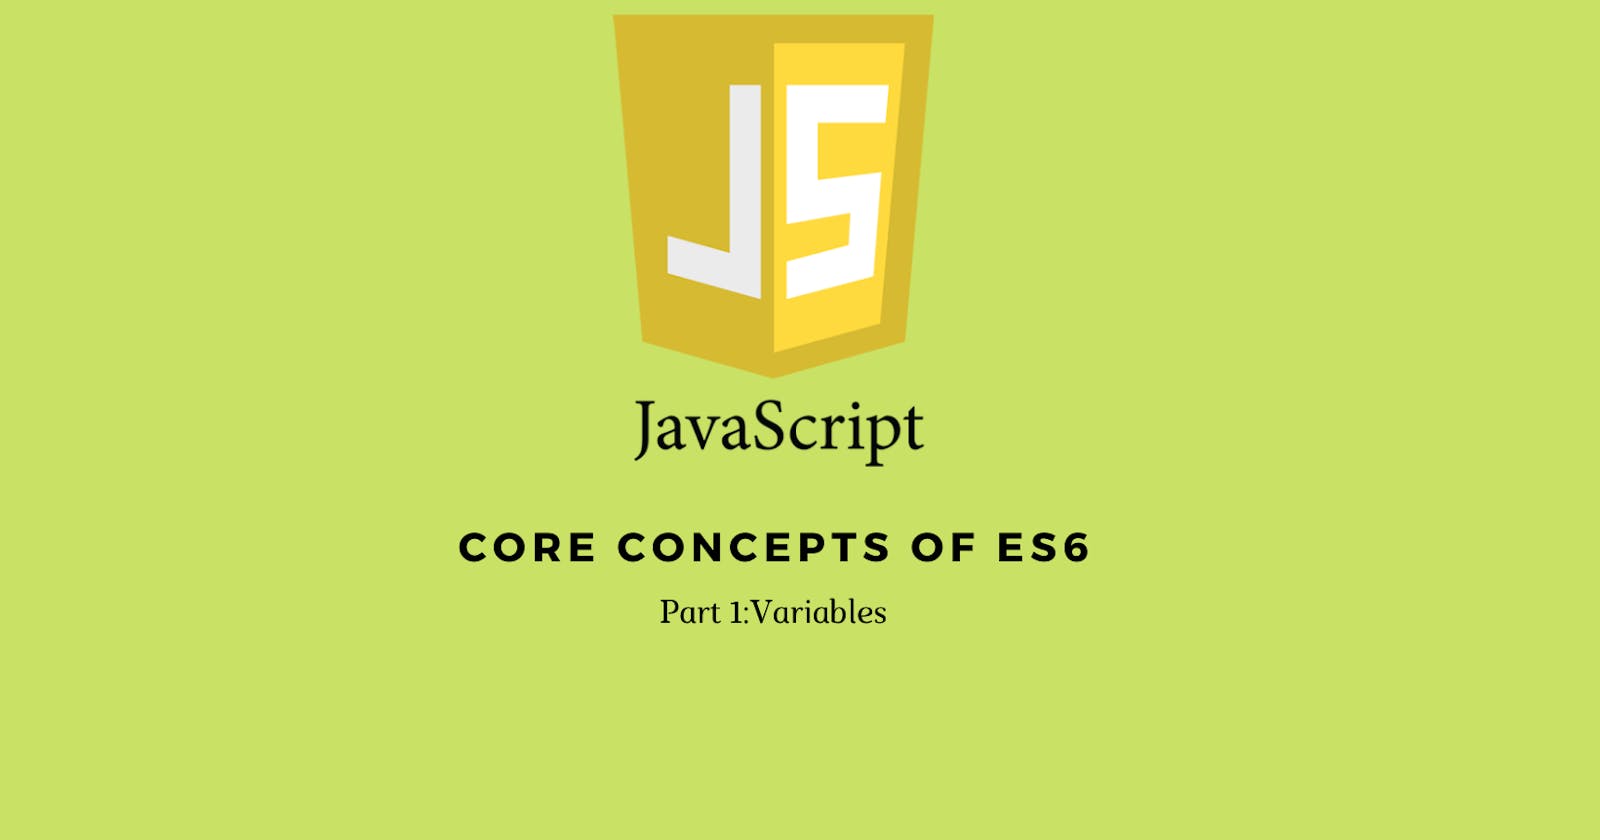 Core concepts of Javascript ES6.